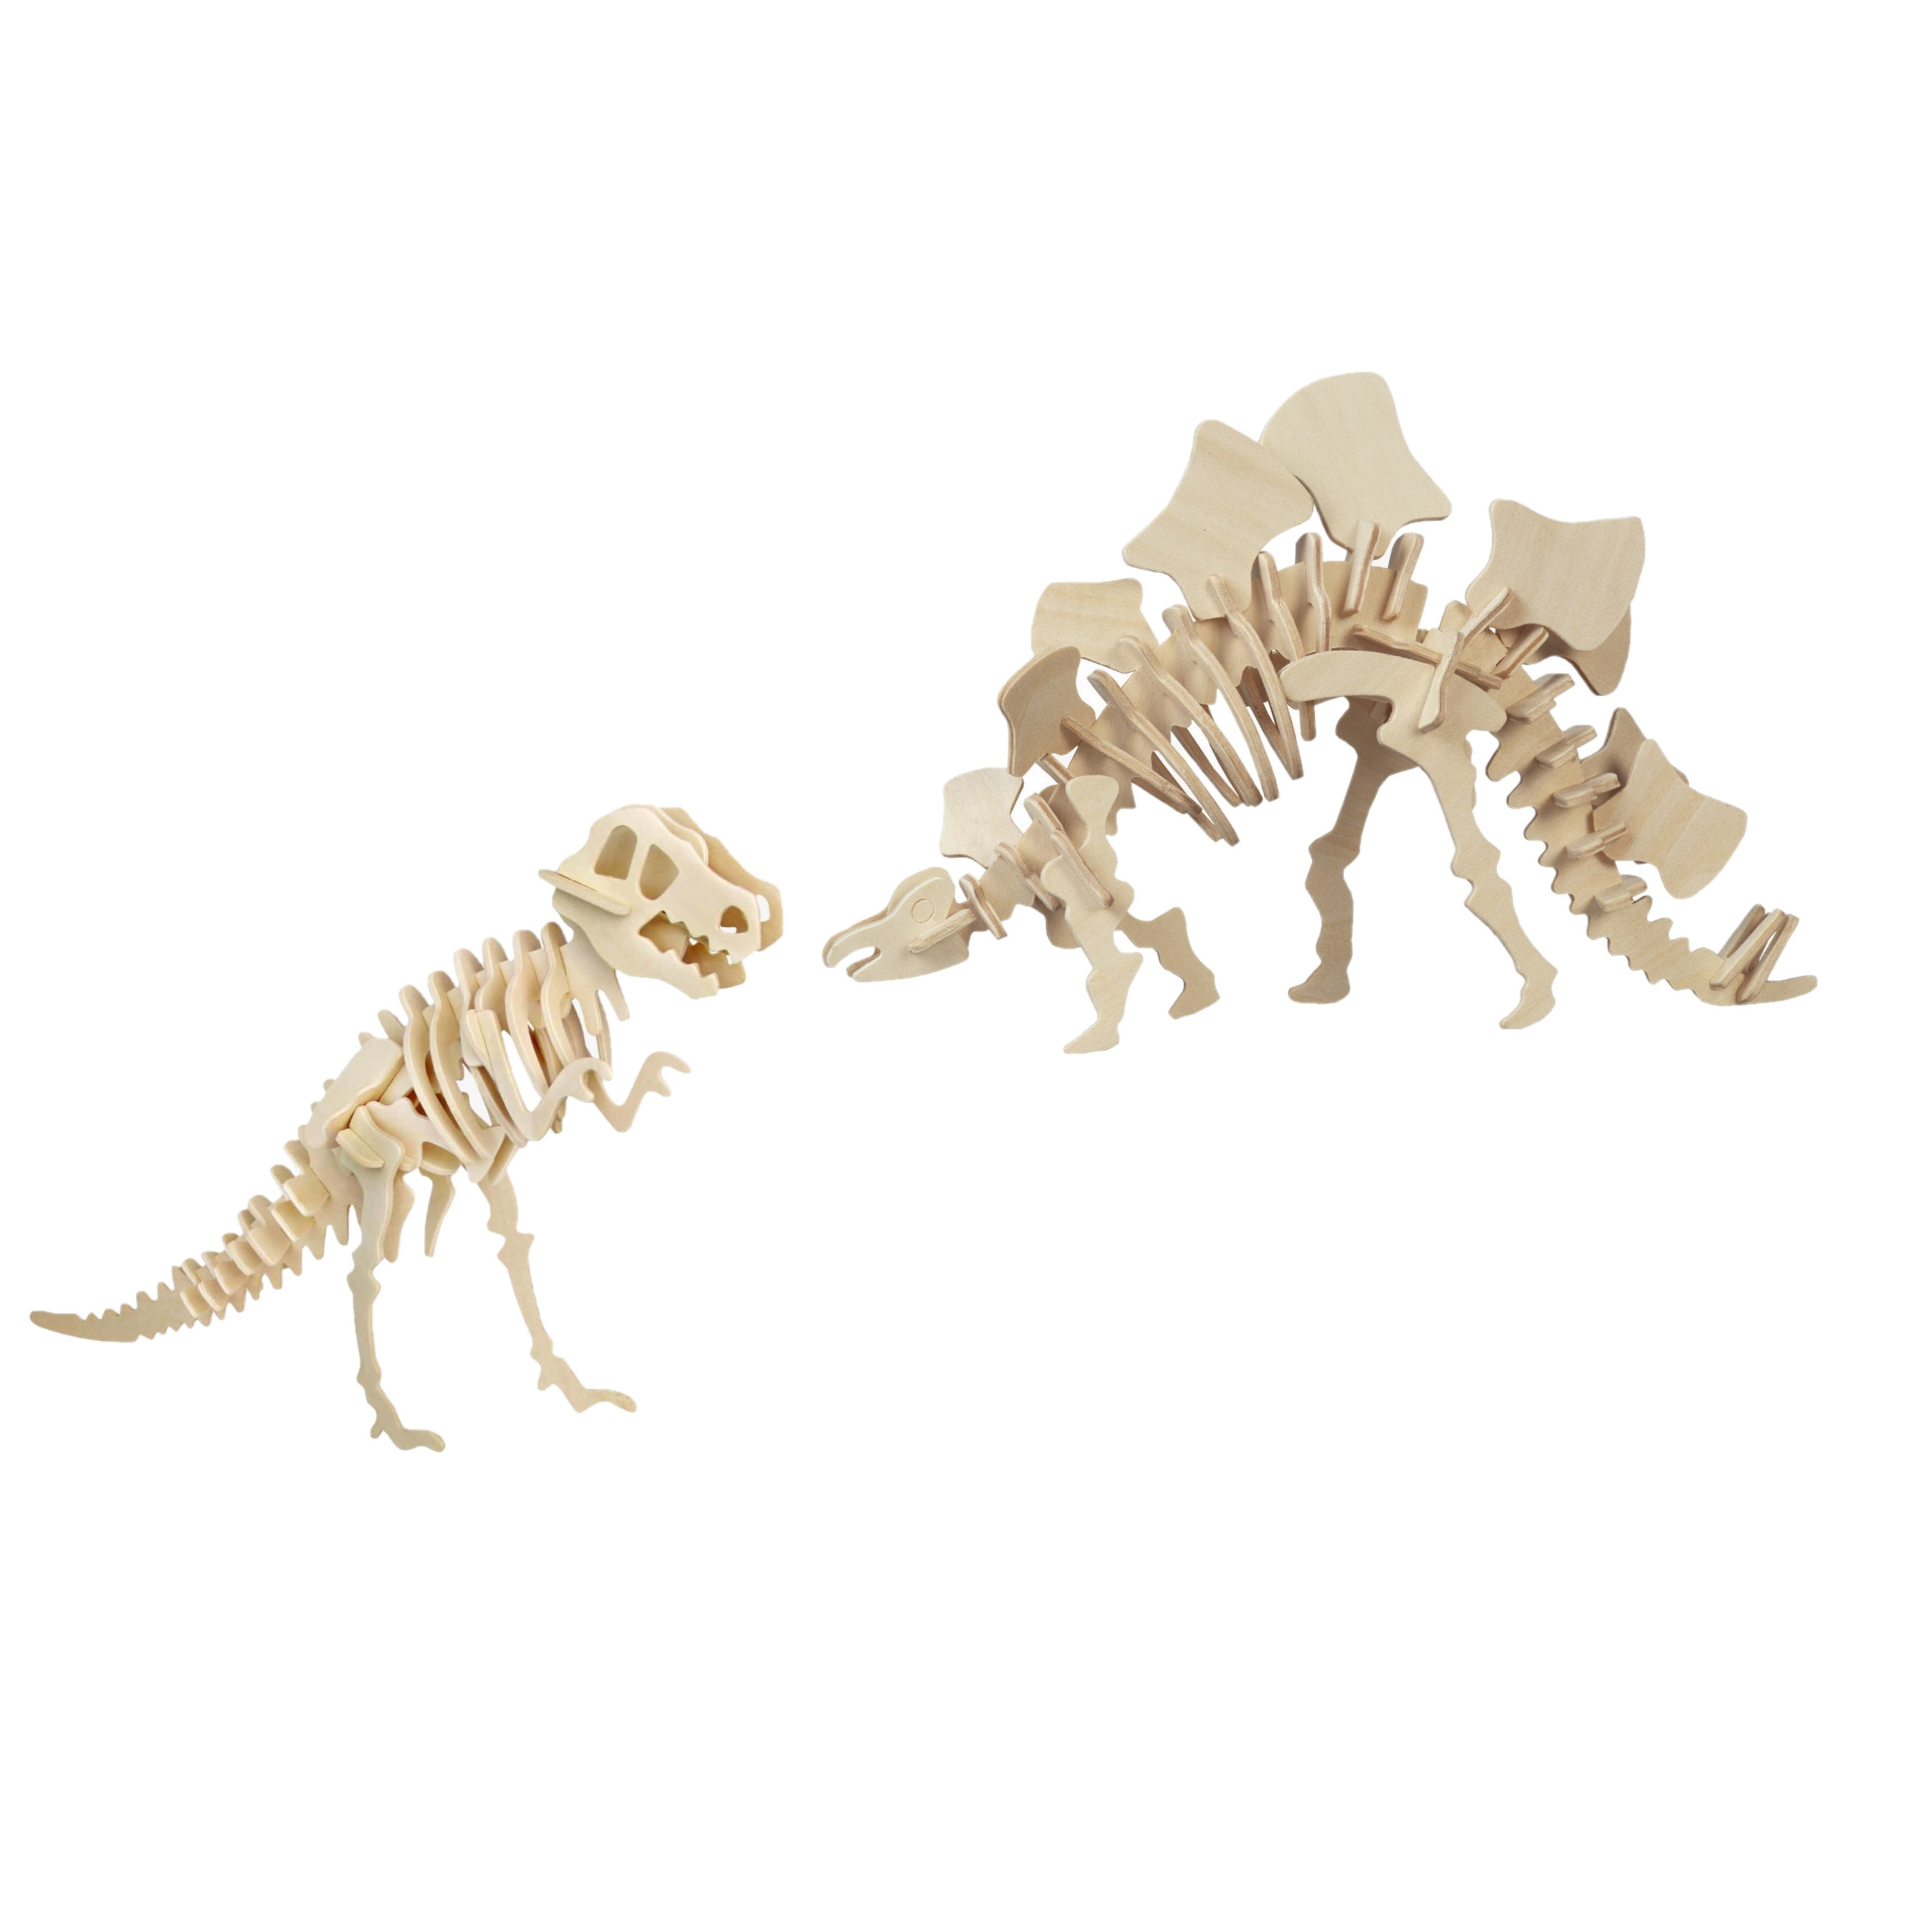 Houten 3D dino puzzel bouwpakket set T-rex en Stegosaurus